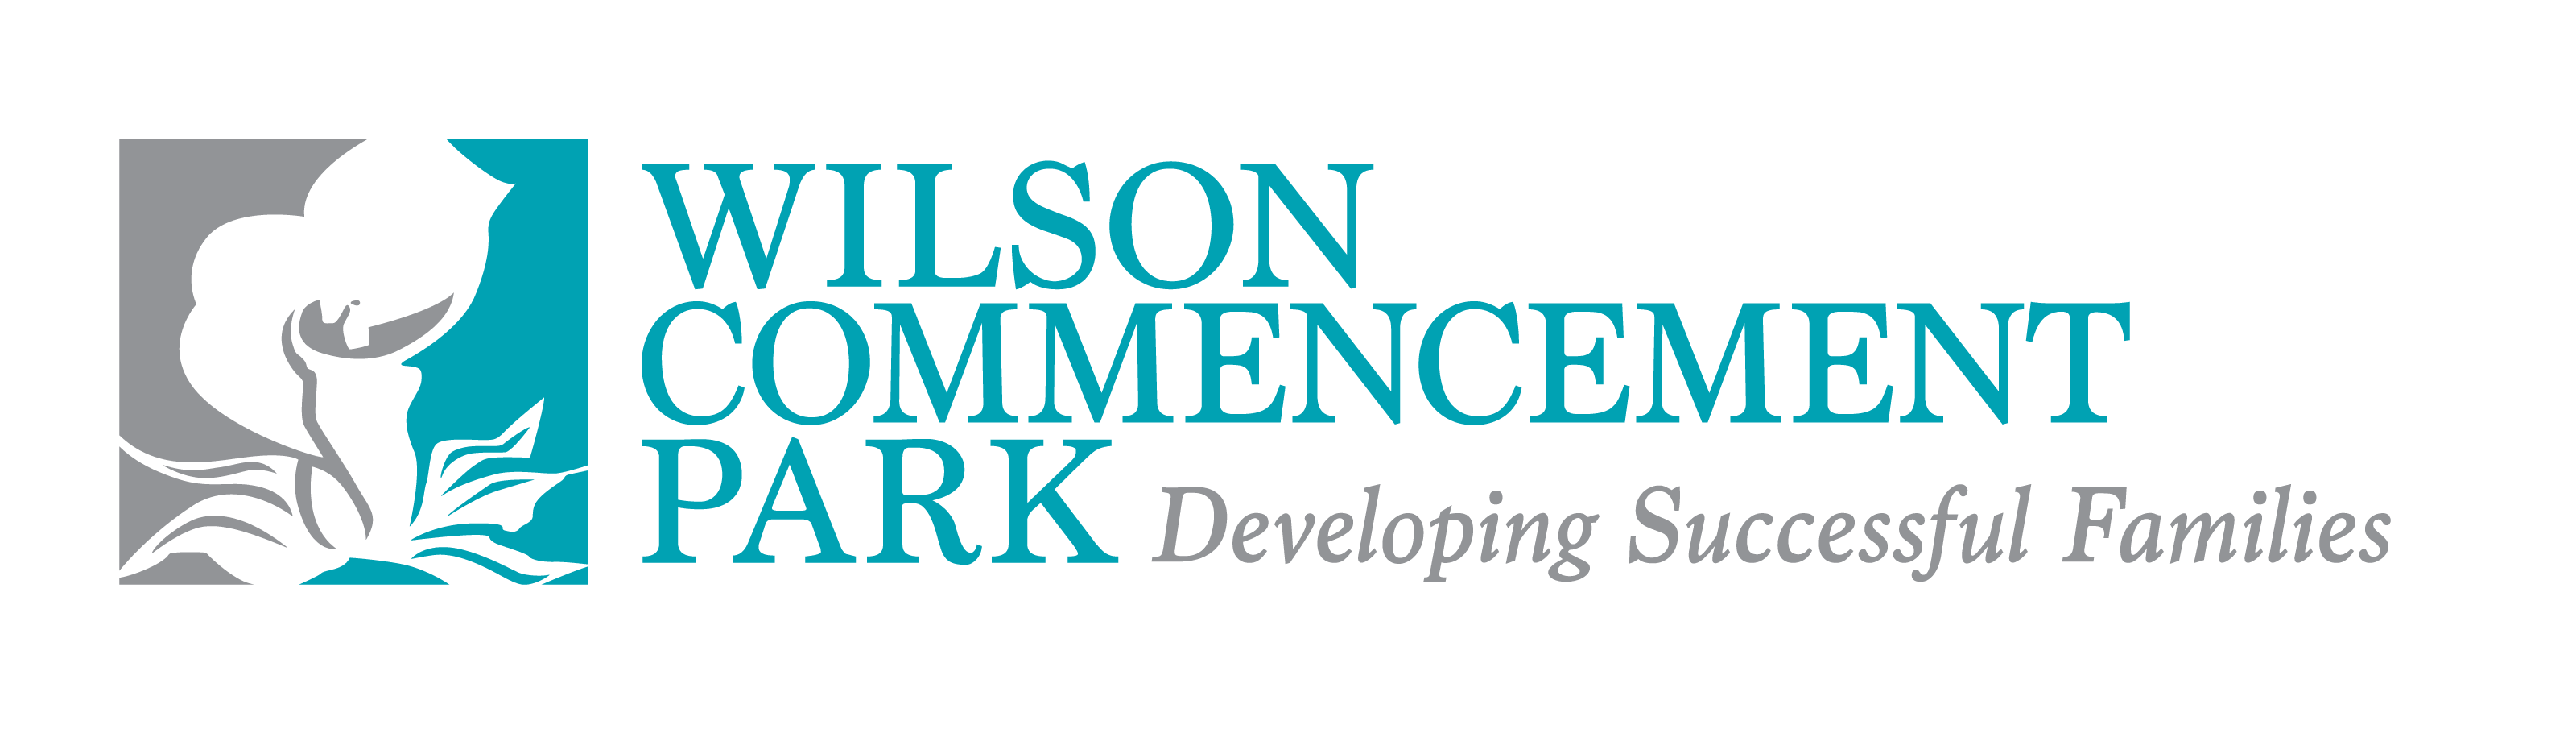 Wilson Commencement Park 